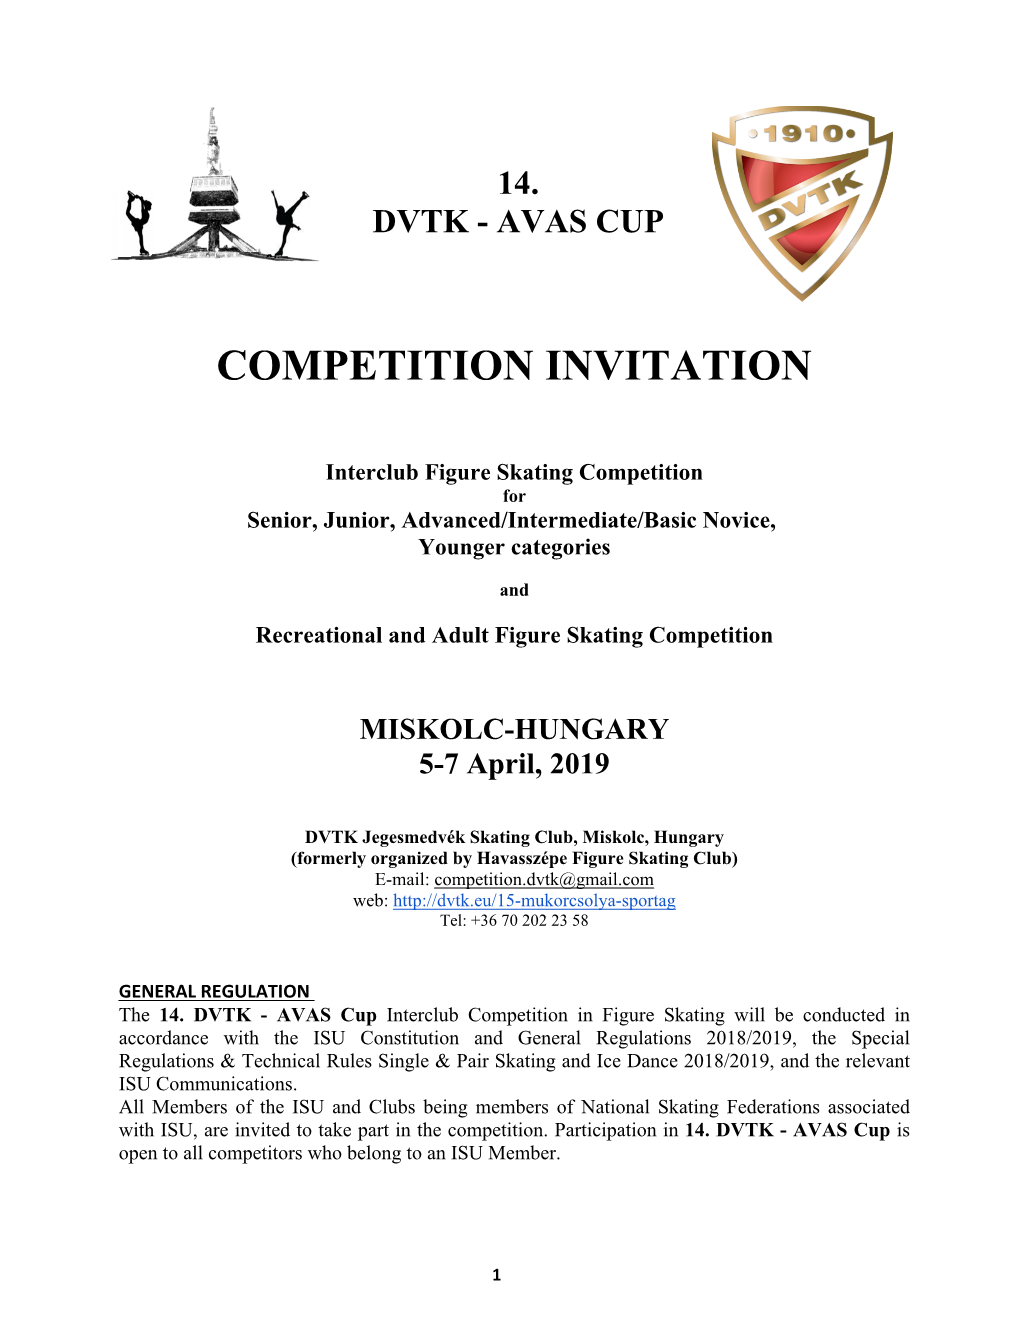 Competition Invitation